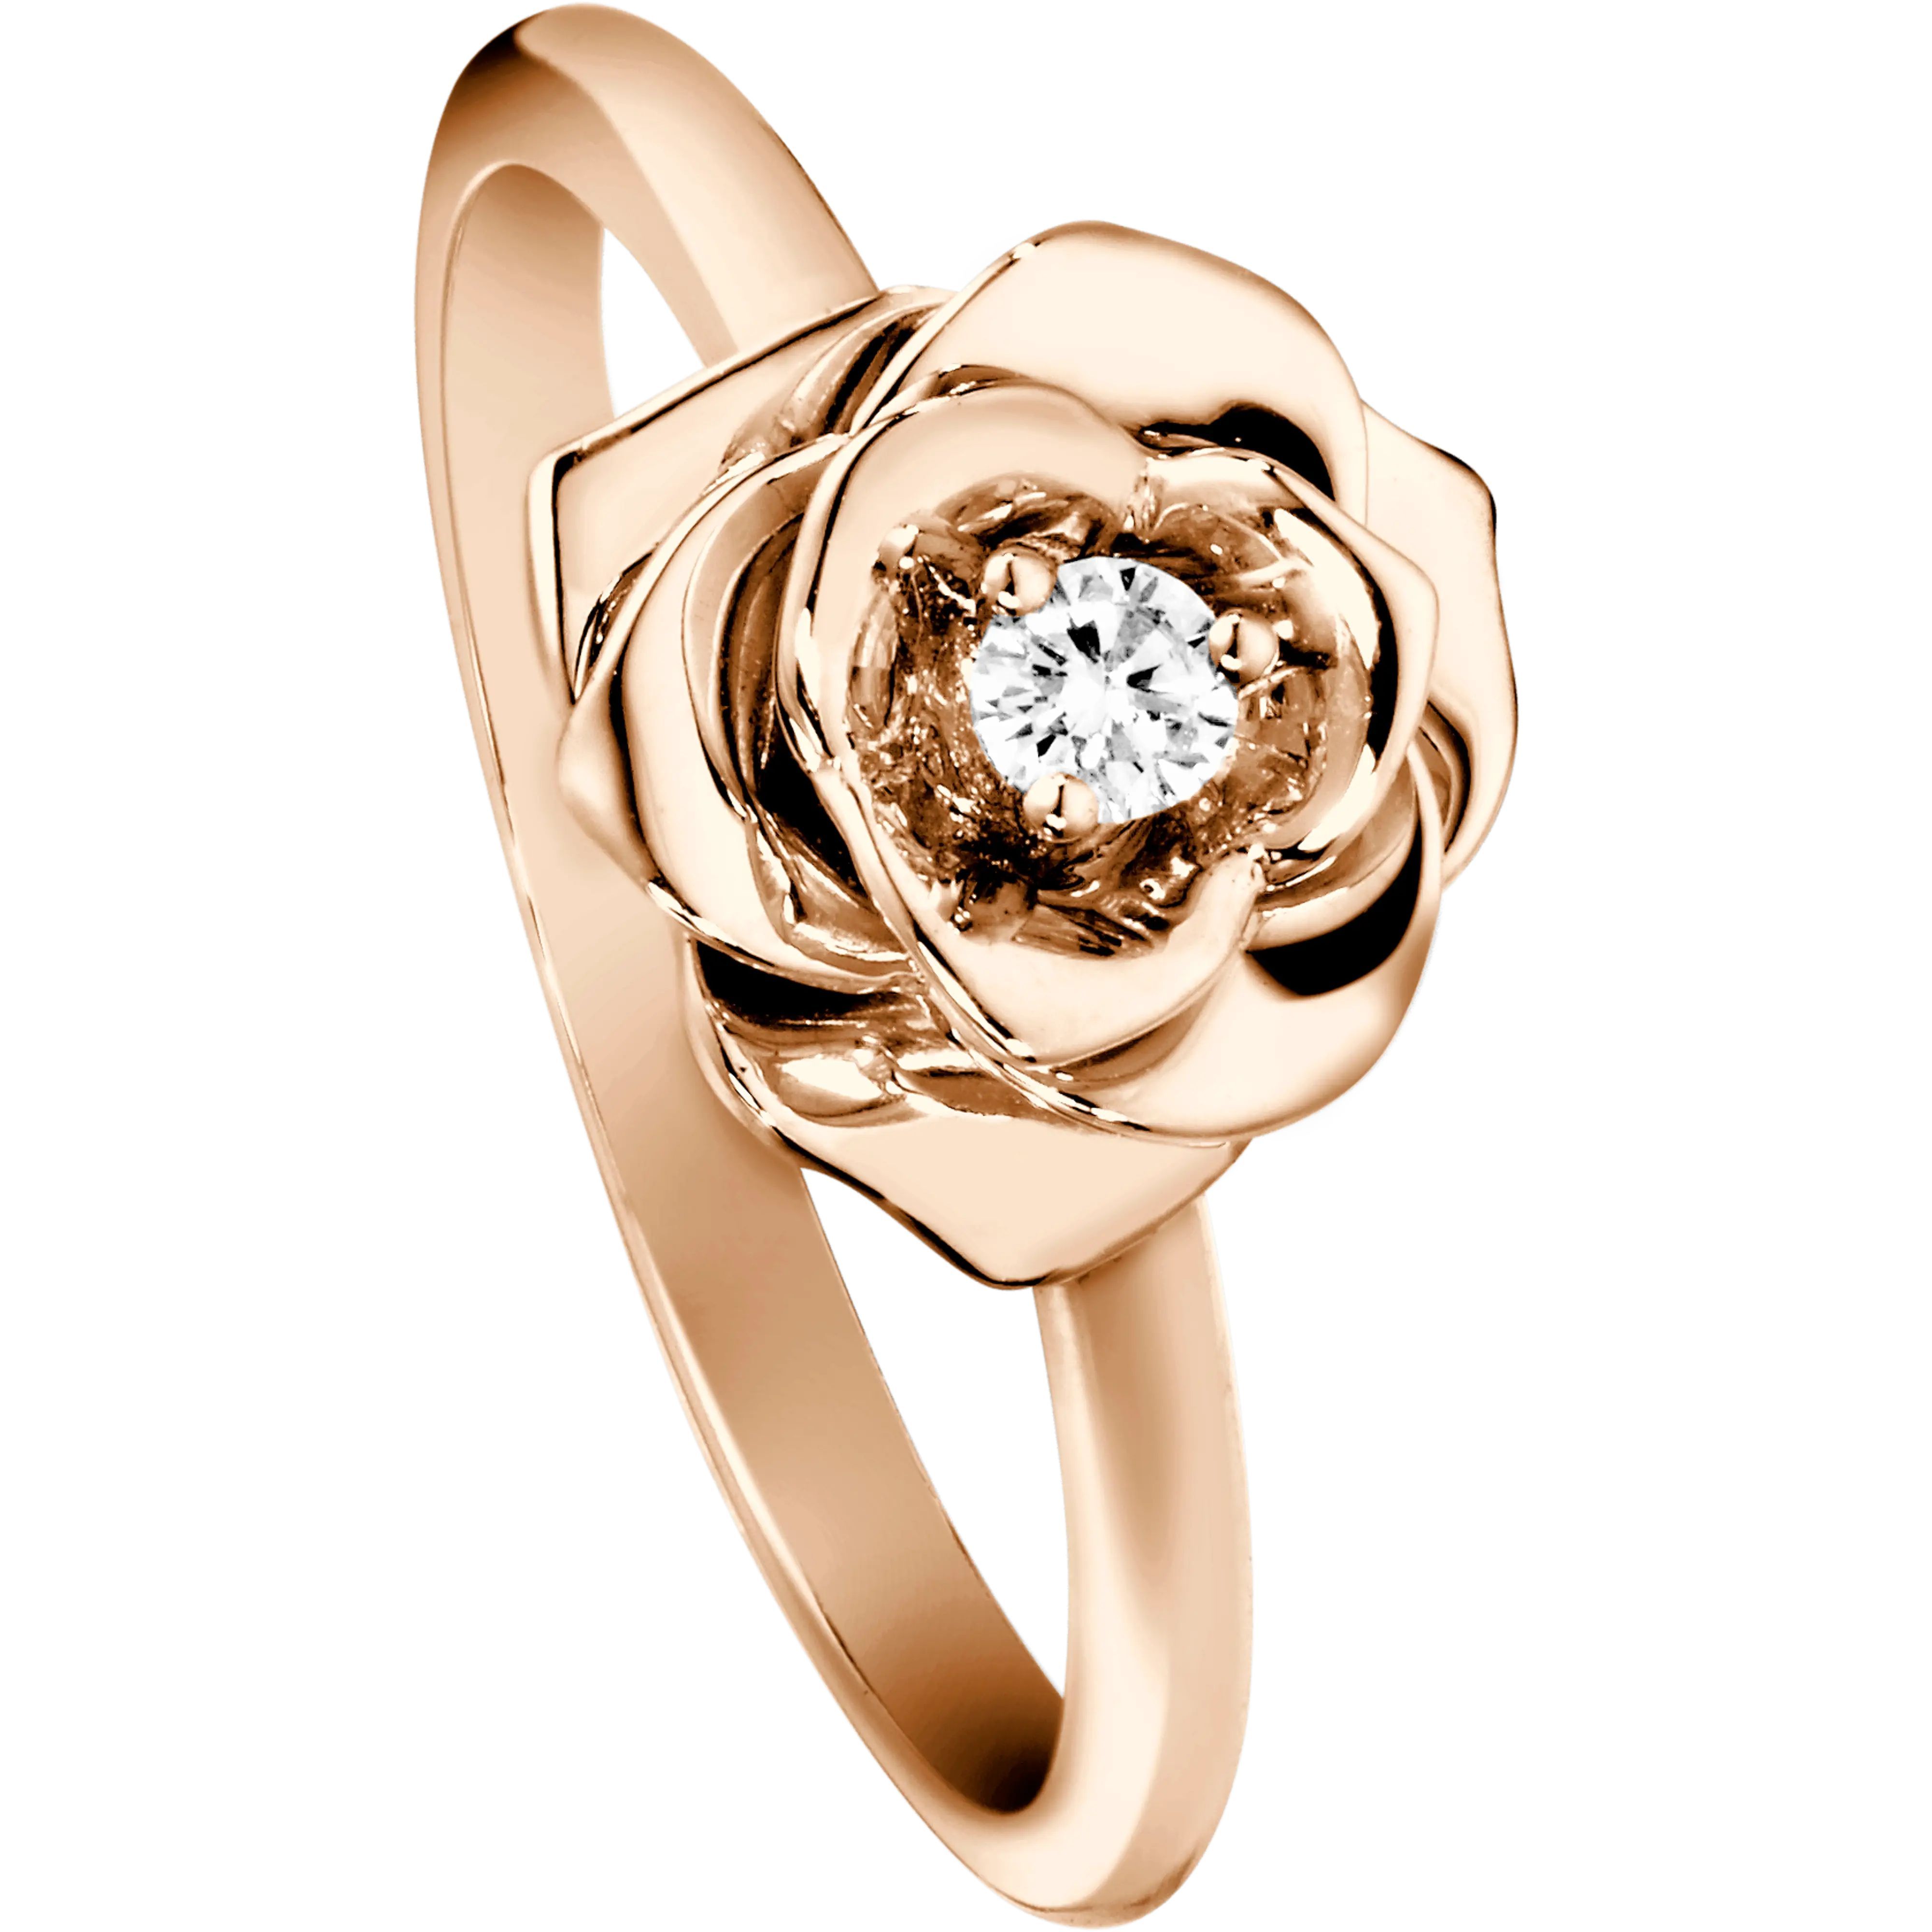 Сколько стоит ювелирное украшение. Кольцо Piaget Rose. Пьяже ювелирные украшения. Piaget g34p7462 кольцо. Пьяже кольцо с бриллиантами.